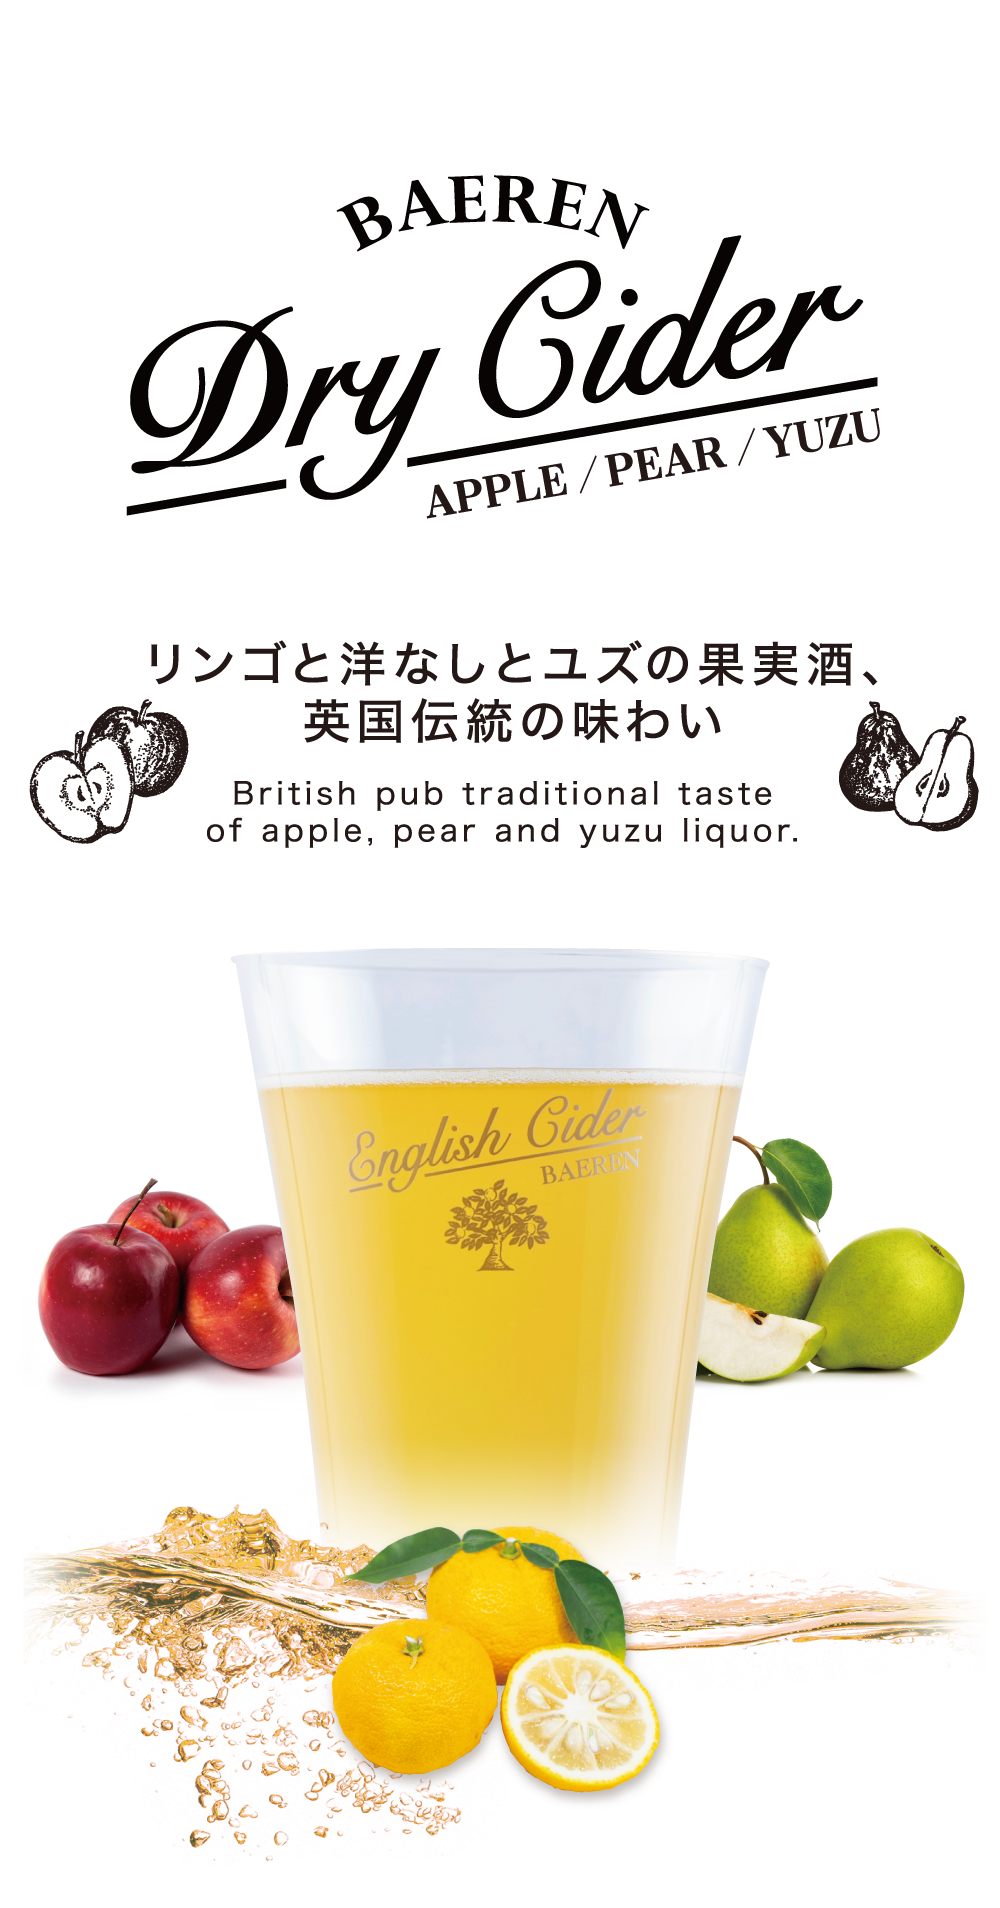 BAEREN Dry Cider Apple pear ベアレン ドライ サイダー リンゴと洋梨（ようなし）の果実酒、英国伝統の味わい 果実と酵母だけ 国産のフレッシュ果実をそのまま贅沢に、タップリと。